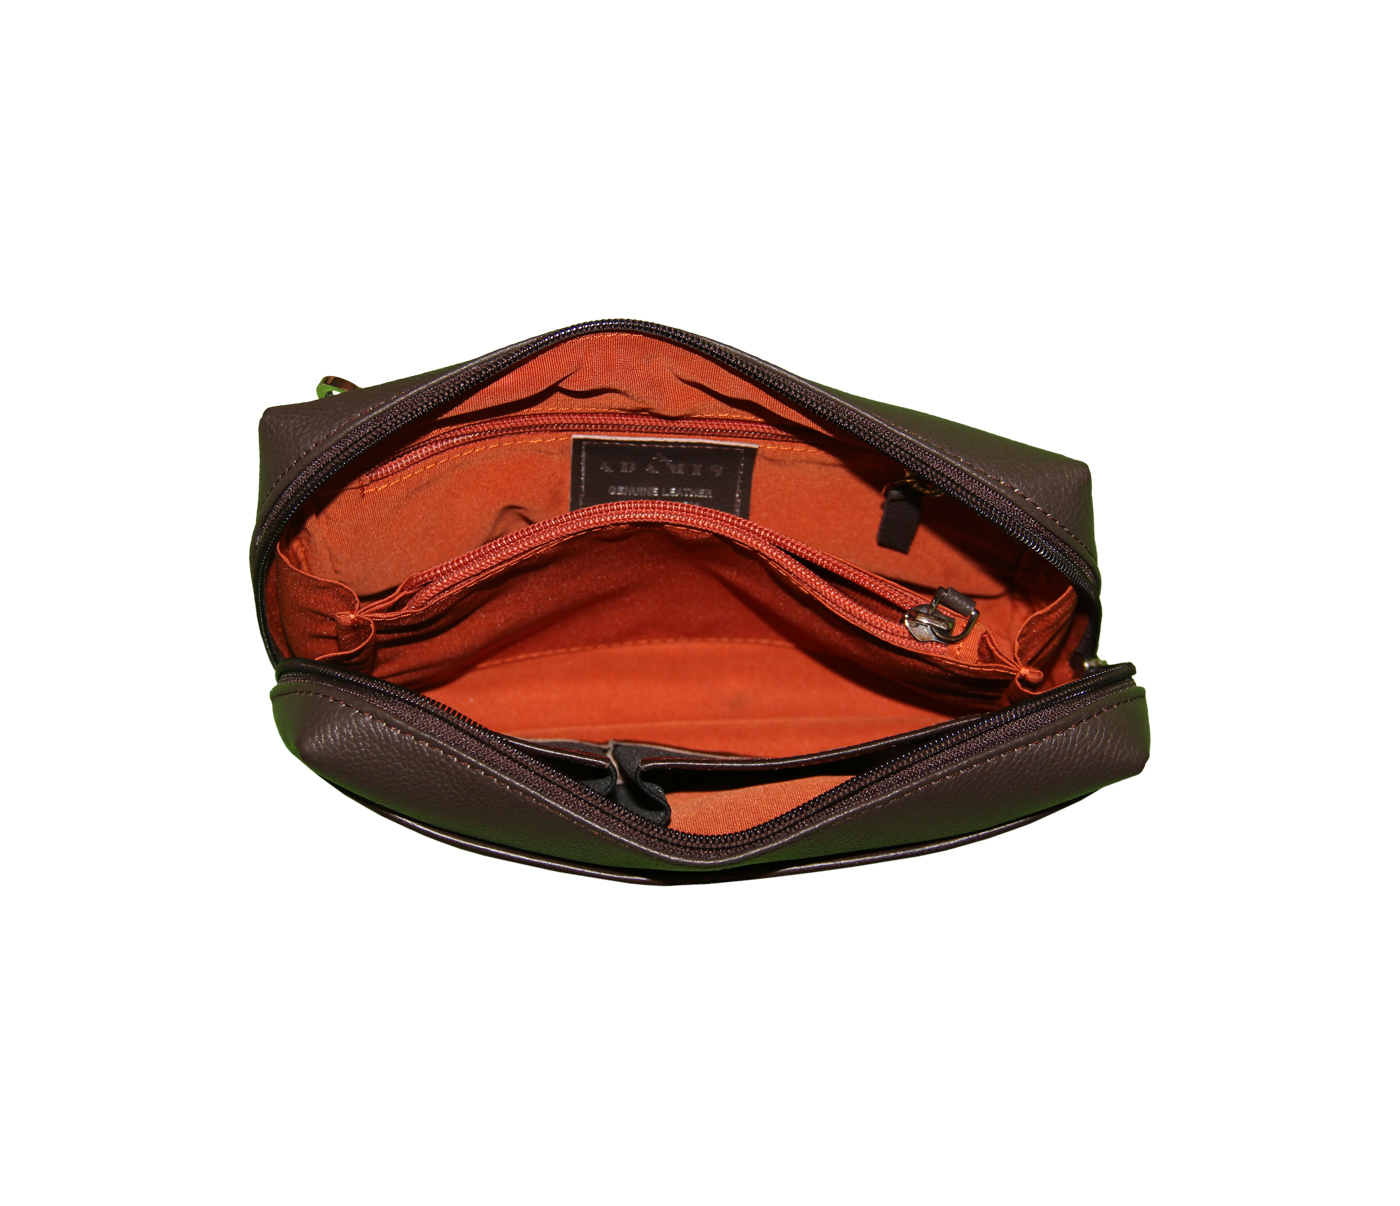 P21-Hayden-Men's bag cum travel pouch in Genuine Leather - Brown.